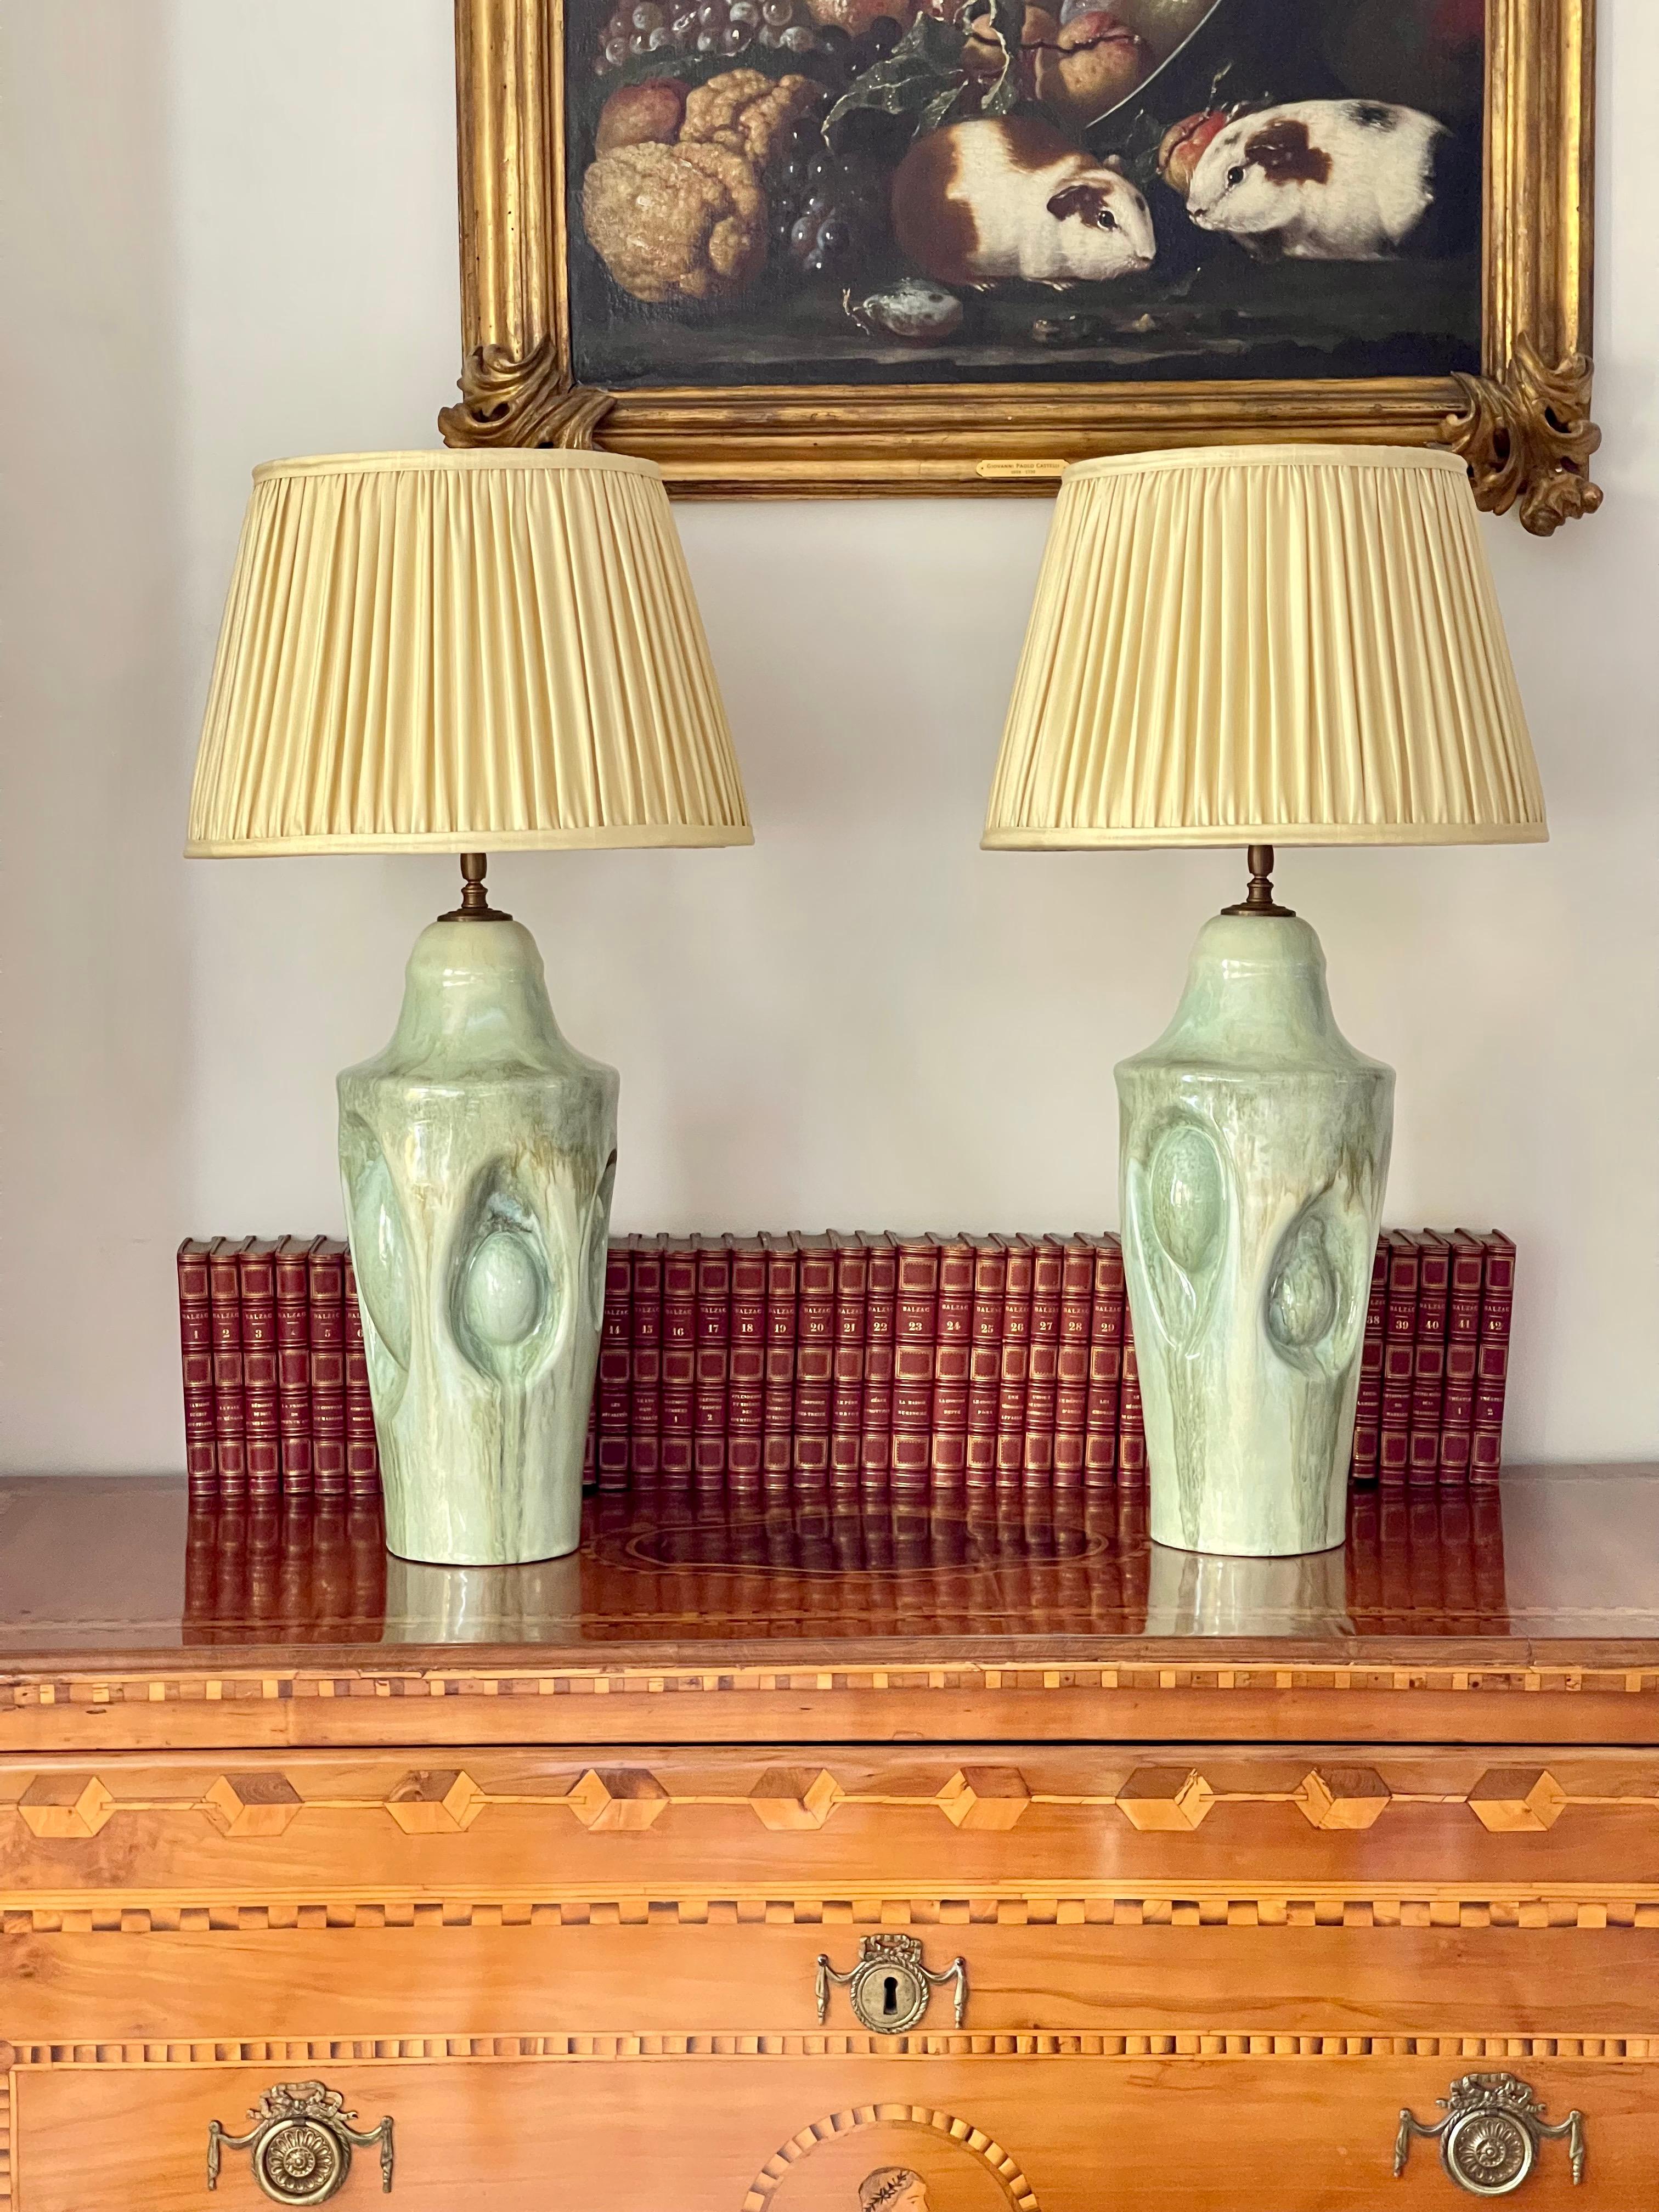 Paire de lampes de table en céramique faites à la main par Violante Lodolo D'Oria  grès unique fabriqué à la main avec de multiples émaux
Mesures : Base de la lampe approximative  17 cm de largeur 48 cm de hauteur - hauteur totale avec les abat-jour